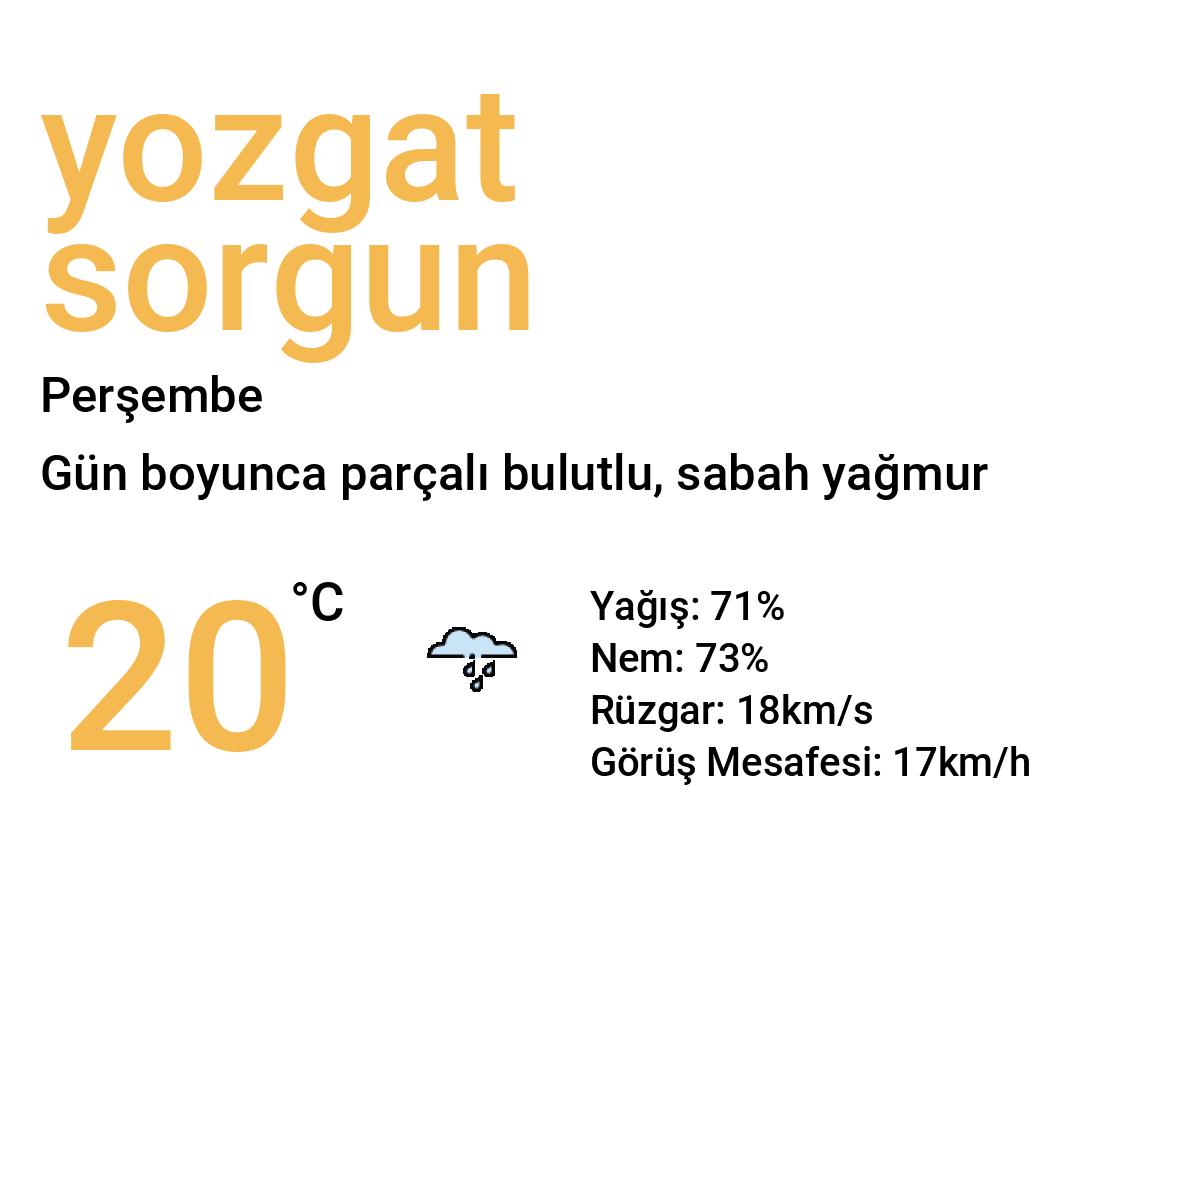 Yozgat Sorgun Yarınki Hava Durumu Tahmini